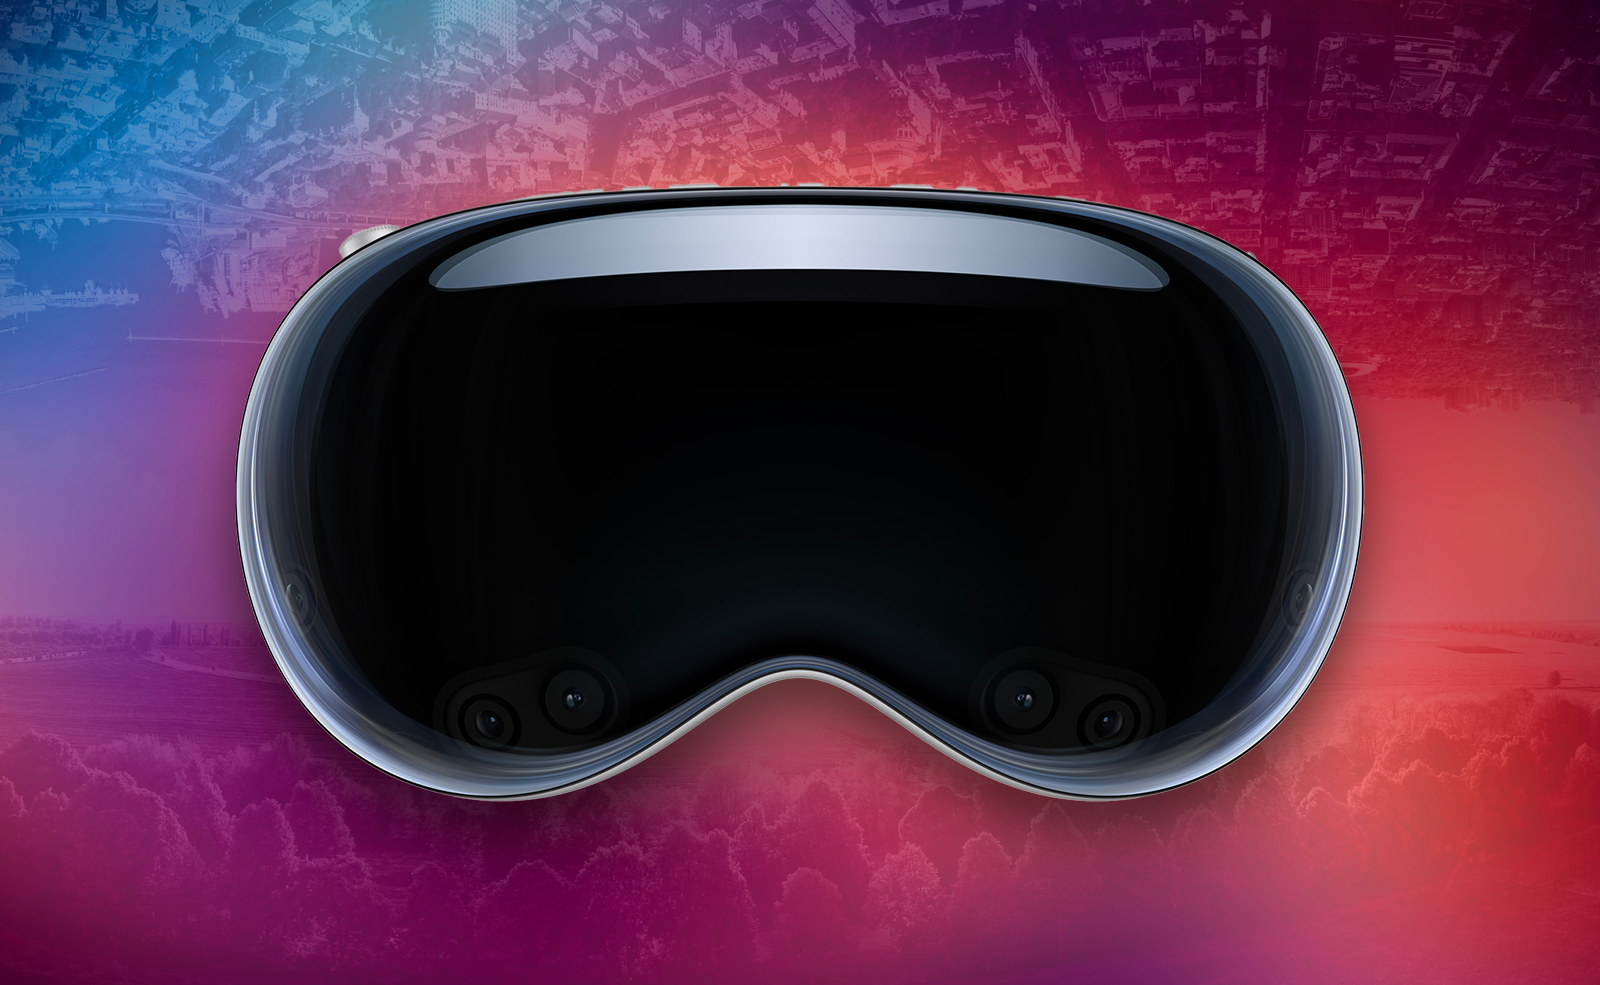 Futur • Vision Pro : la réalité augmentée au doigt et à l’œil